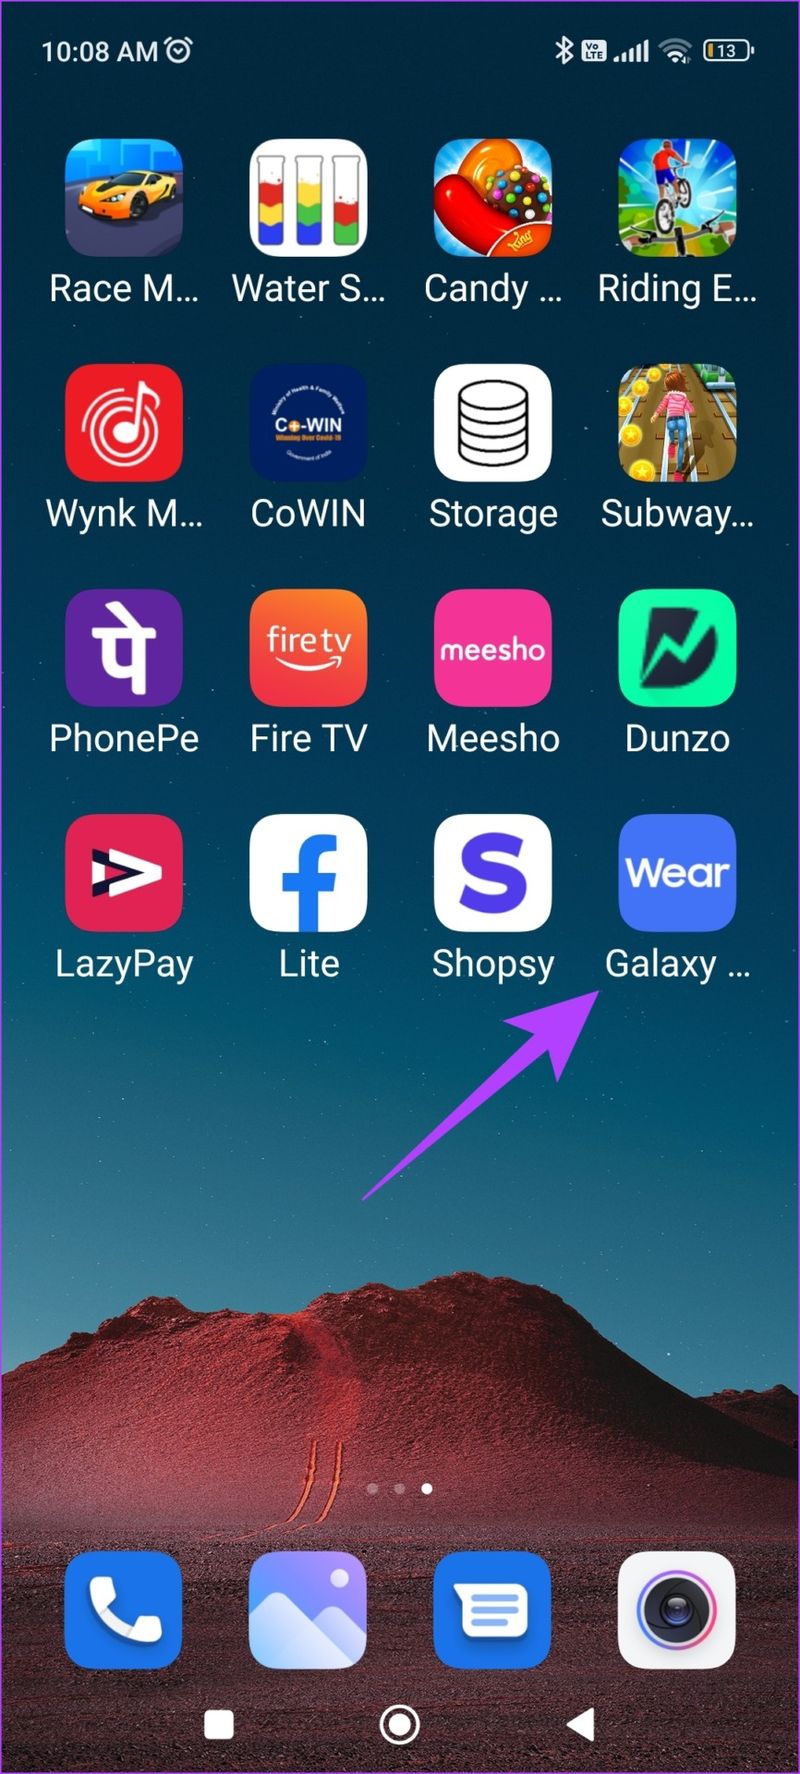 Öffnen Sie die Galaxy Wearable-App